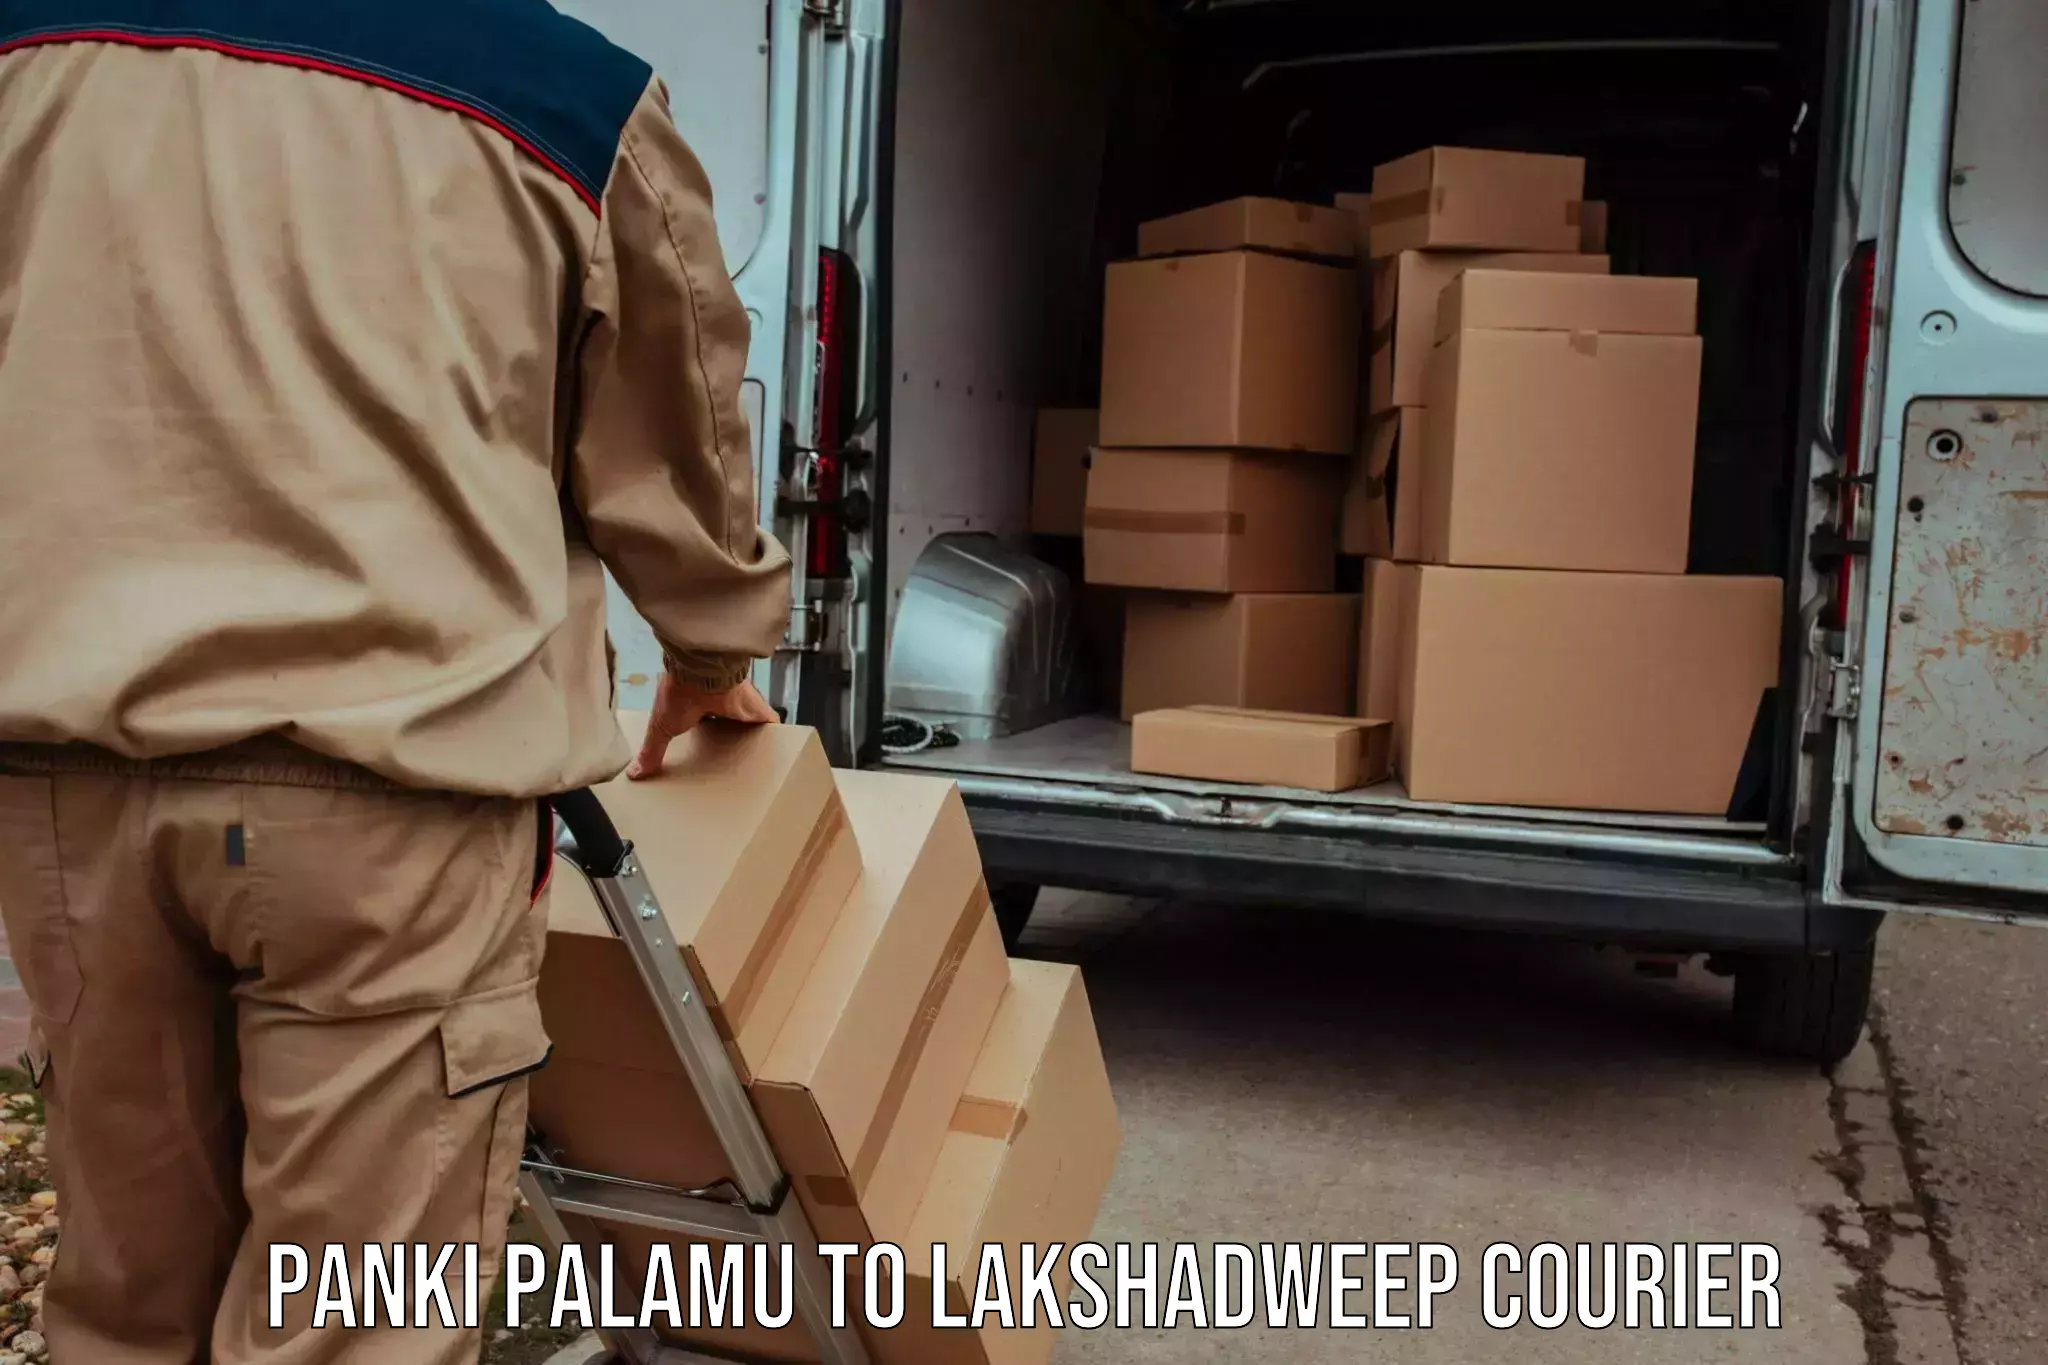 Weekend courier service Panki Palamu to Lakshadweep